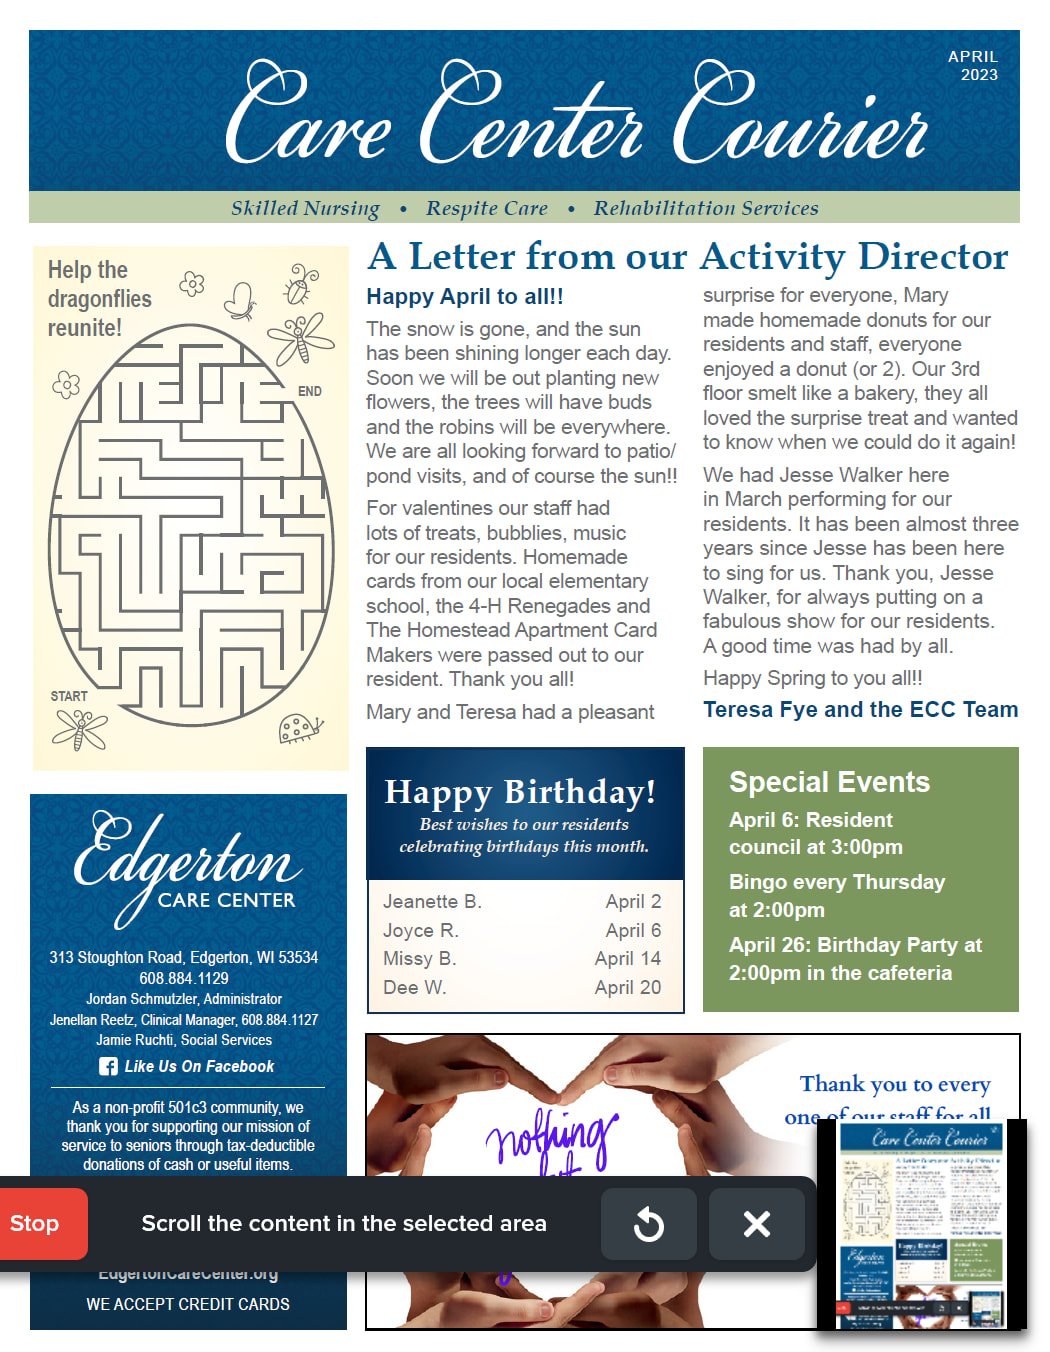 April 2023 Newsletter at Edgerton Care Center in Edgerton, Wisconsin